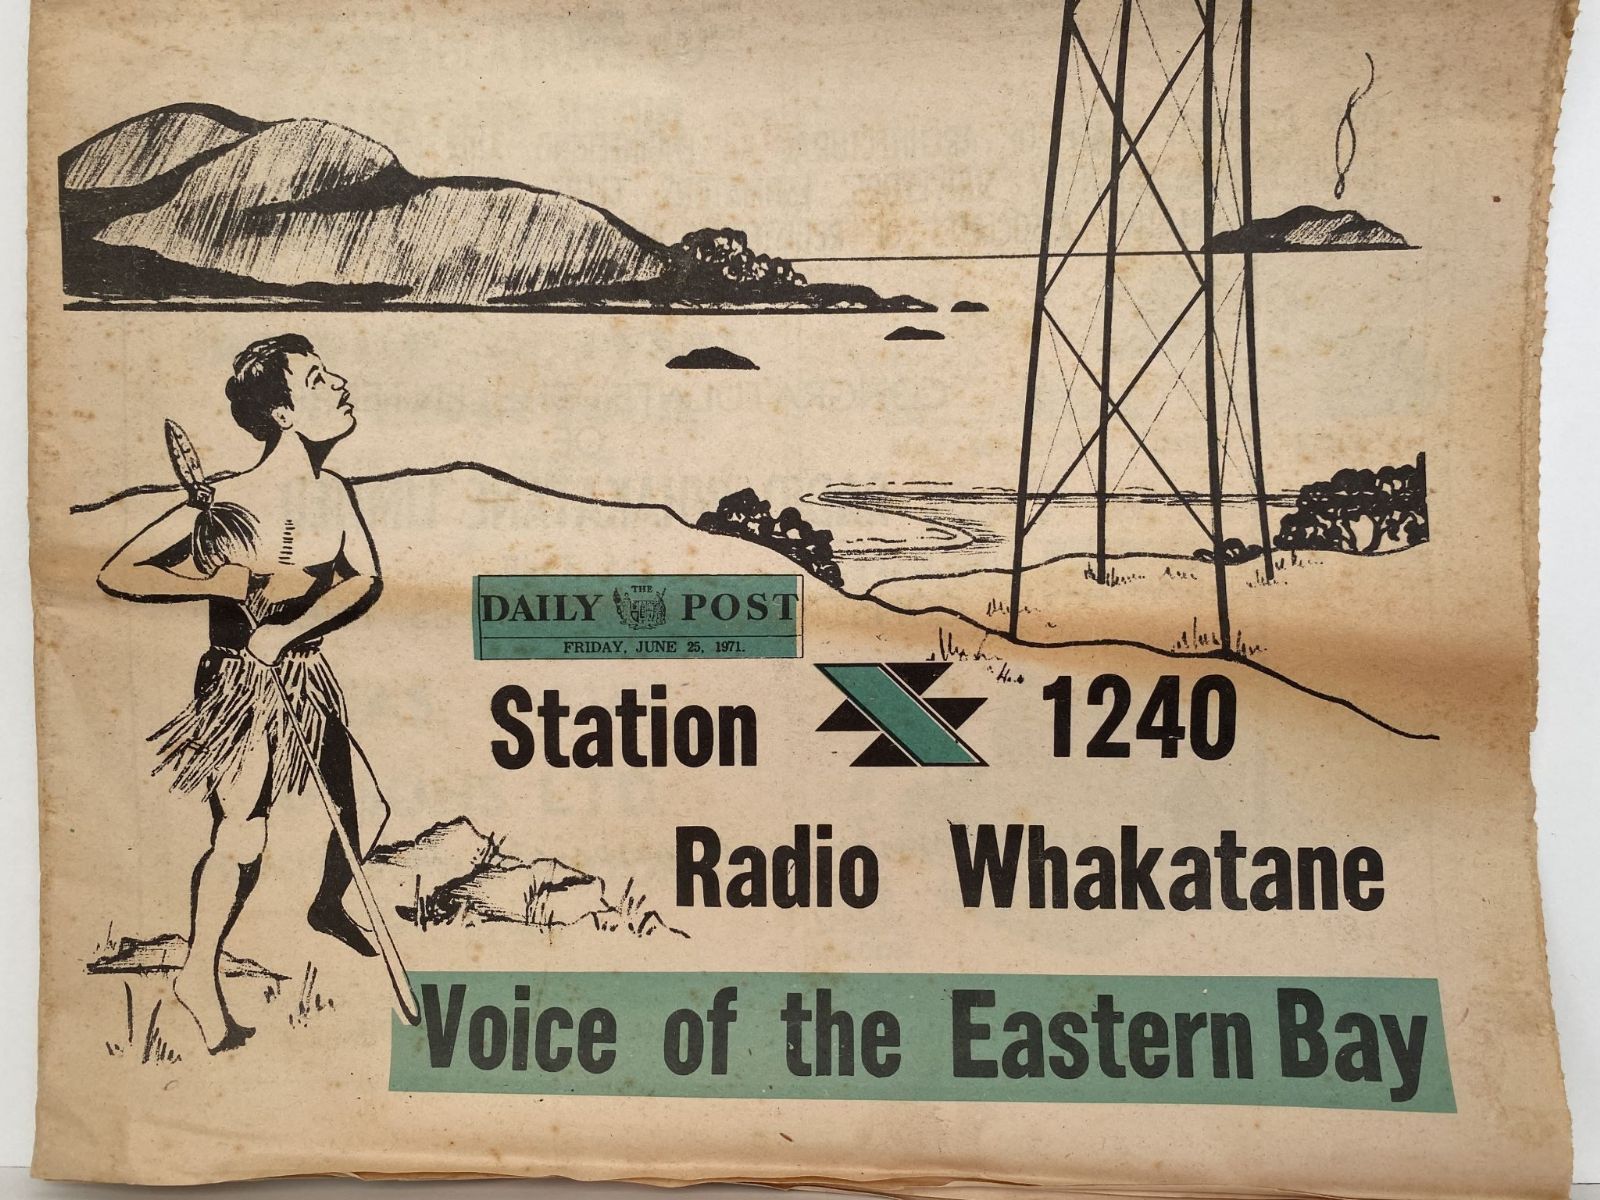 OLD NEWSPAPER: The Daily Post, Whakatane, 30 June 1971 - Radio Whakatane opening